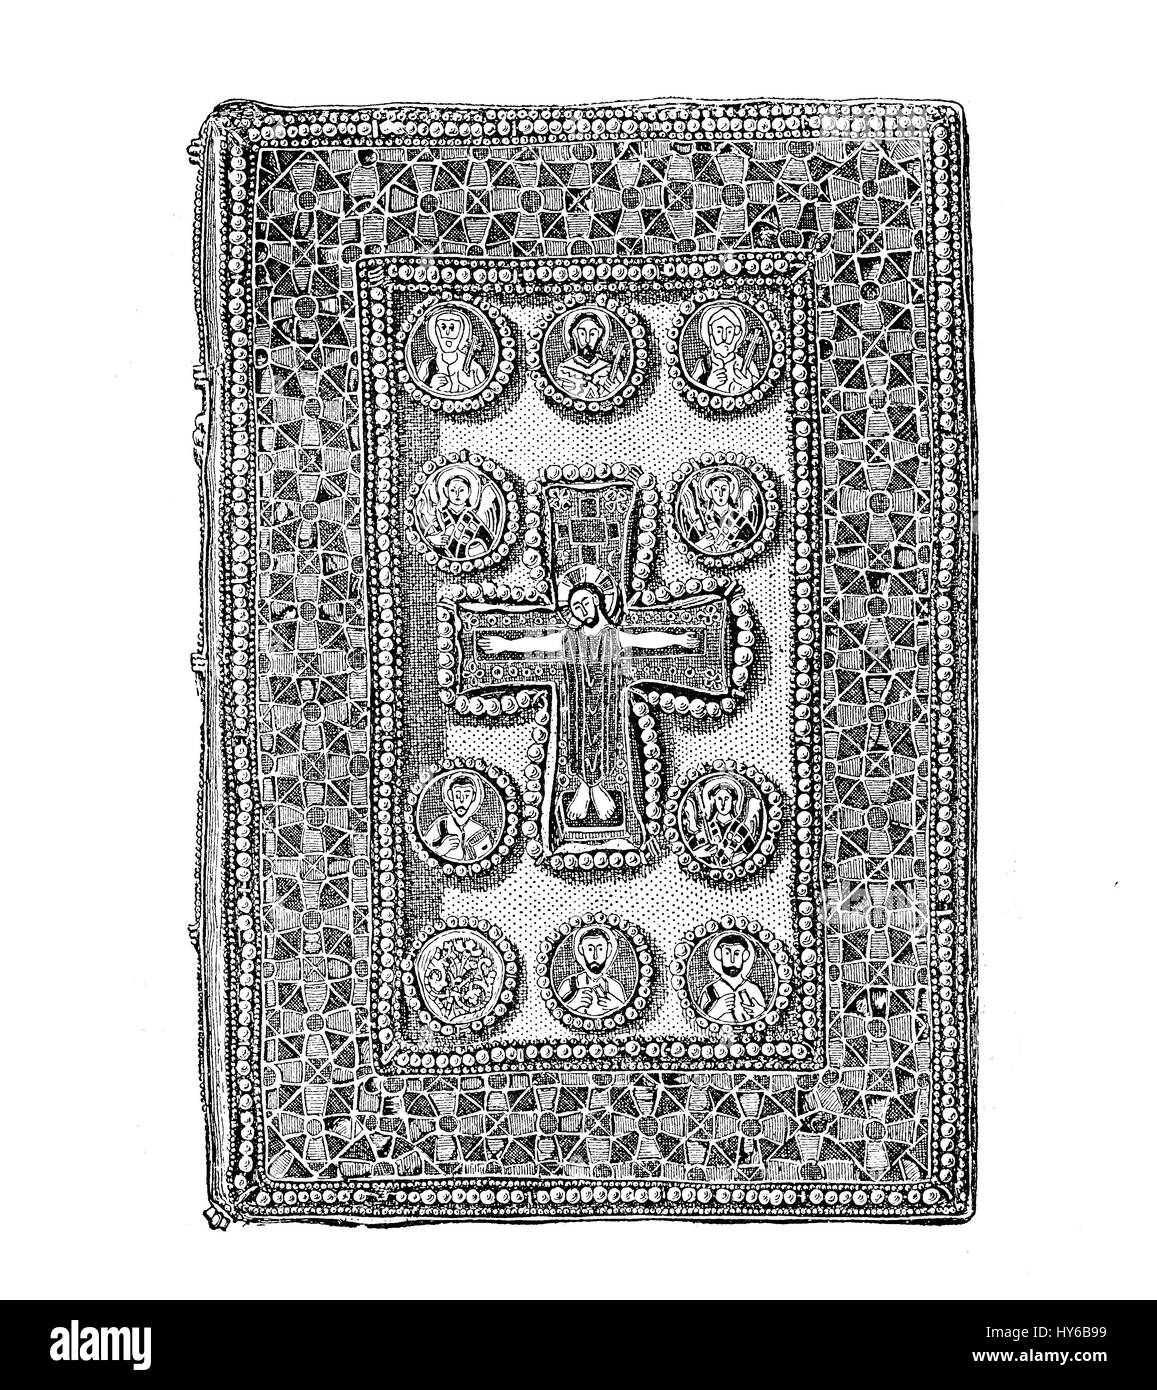 Jewelled bizantina, di rilegatura di libri religiosi medievali prenota, artwork set con smalti e gioielli, illustrazione vintage Foto Stock